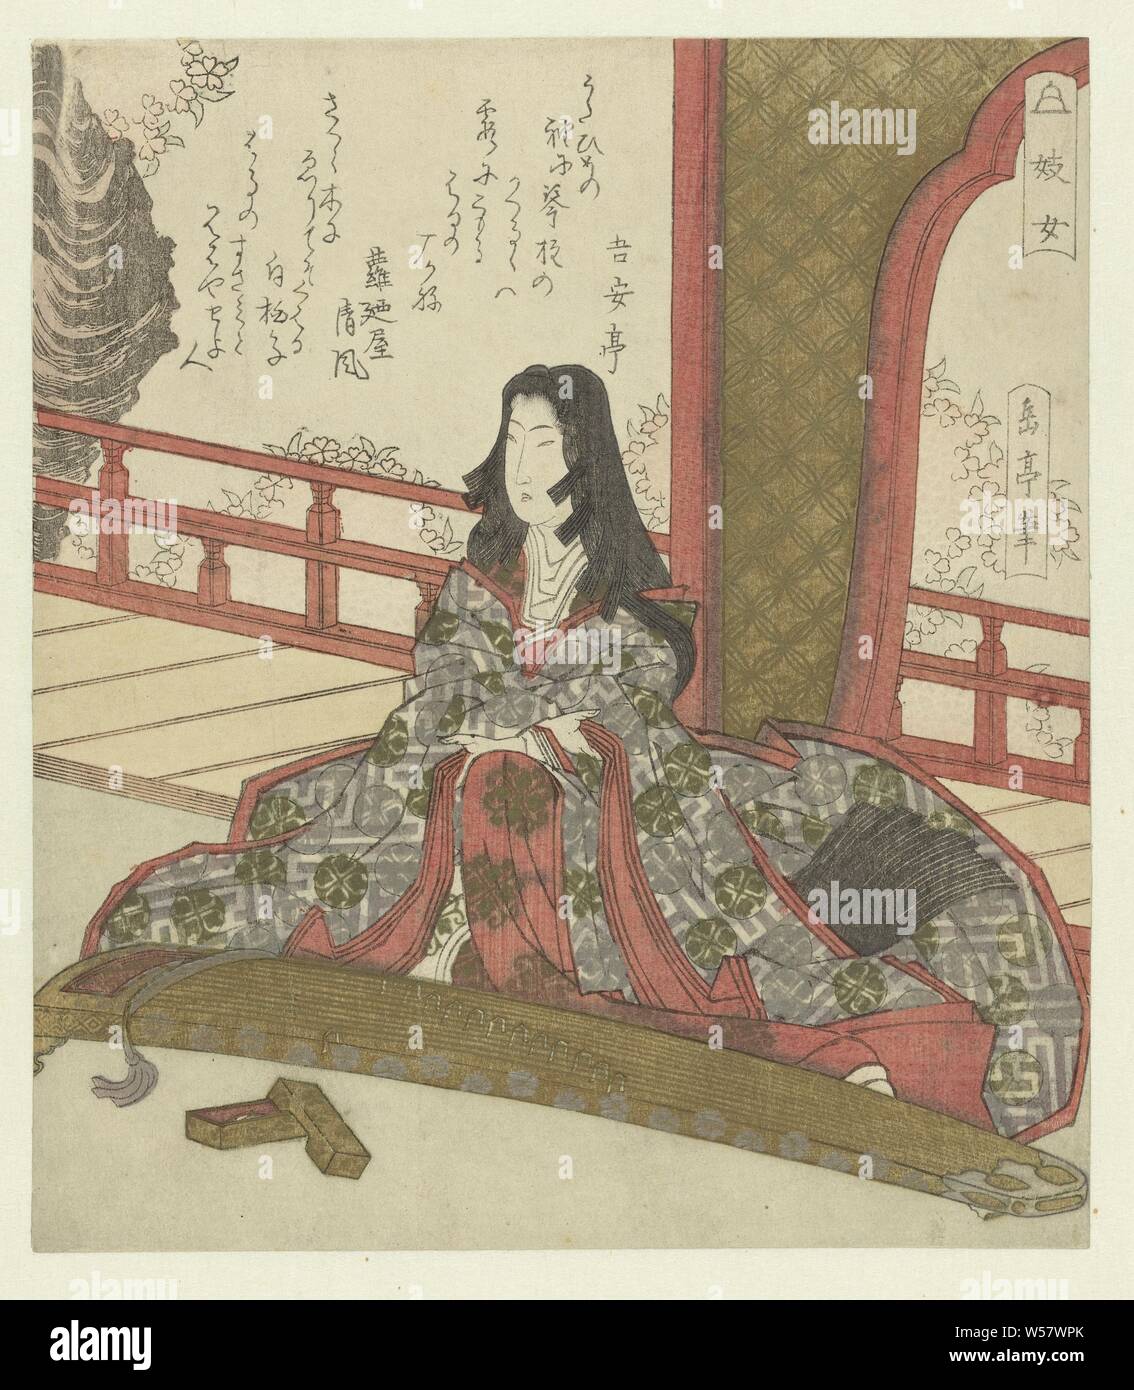 La signora Ginjô Ginjô (titolo in oggetto), una donna con peli molto lunghi è seduta su un balcone, dietro il suo koto giapponese (strumento a corda). Lei si mette le maniche lunghe a parte prima di lei inizia a suonare lo strumento. Ginjô o Gijô, è la sorella più giovane di Giô, entrambe le figure appaiono in storie di Heike (Heike monogatari). Ginjô era la padrona di Taira no Kiyomori. Questo foglio è la lamiera destra di un trittico. Con due poesie, dignitario di corte - BB - femmina dignitario: lady-in-attesa, Yashima Gakutei (menzionato in oggetto), Giappone, 1823 - 1825, carta, colore xilografia, h 212 mm × W 184 mm Foto Stock